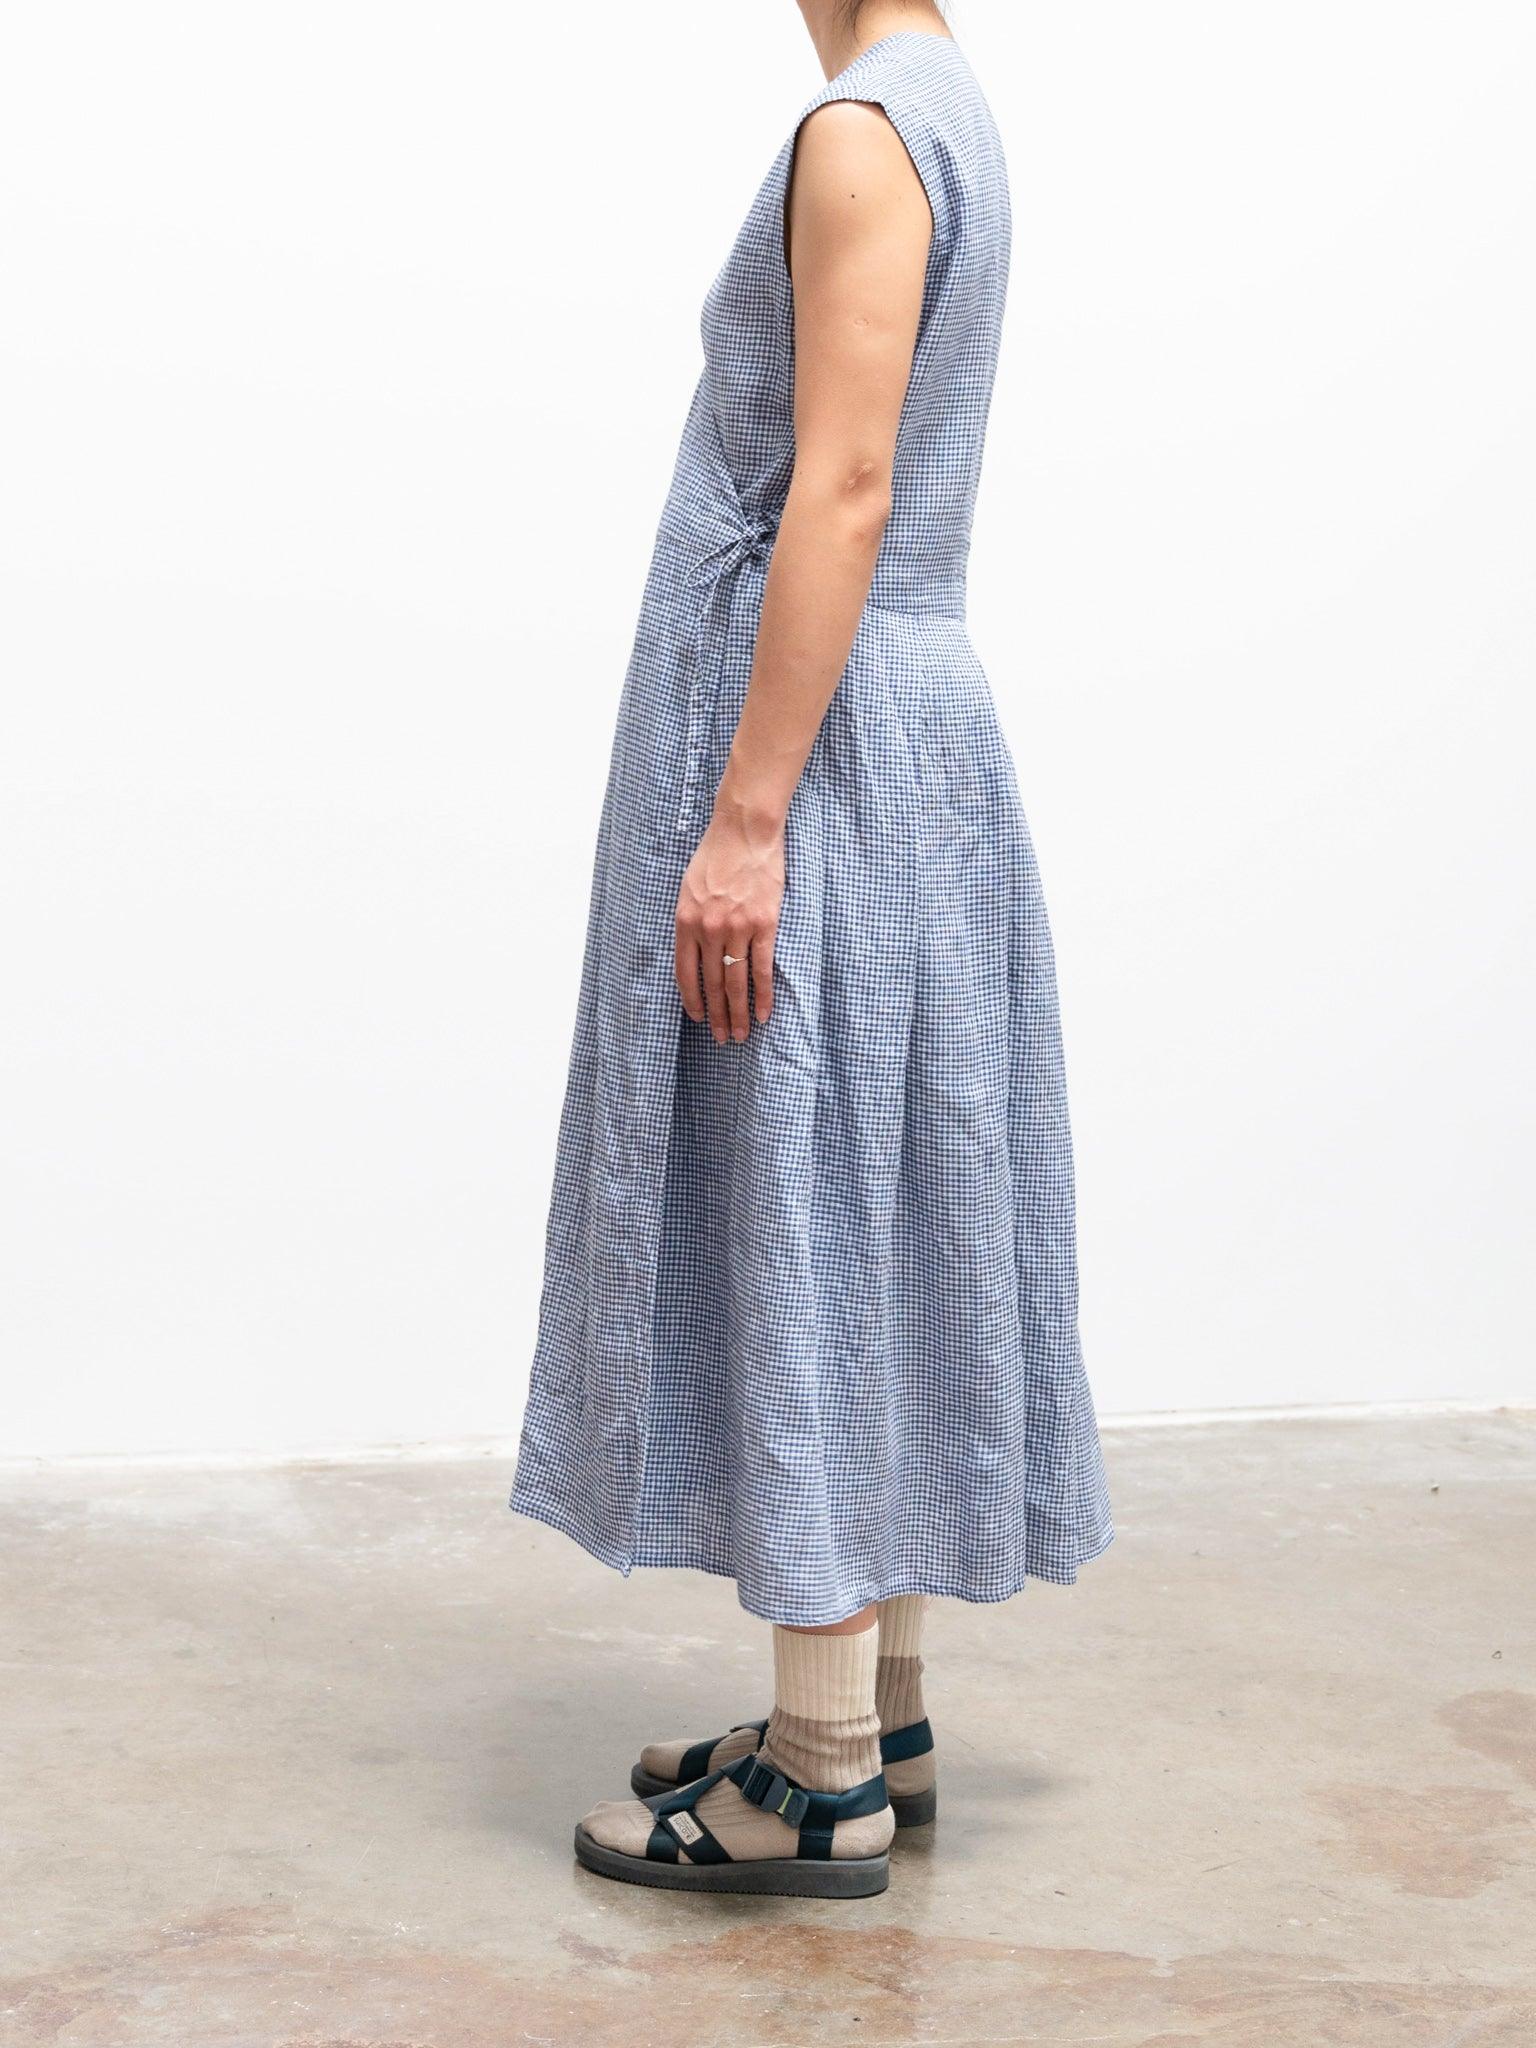 Namu Shop - Maillot Linen Cache Coeur Dress - Blue Check